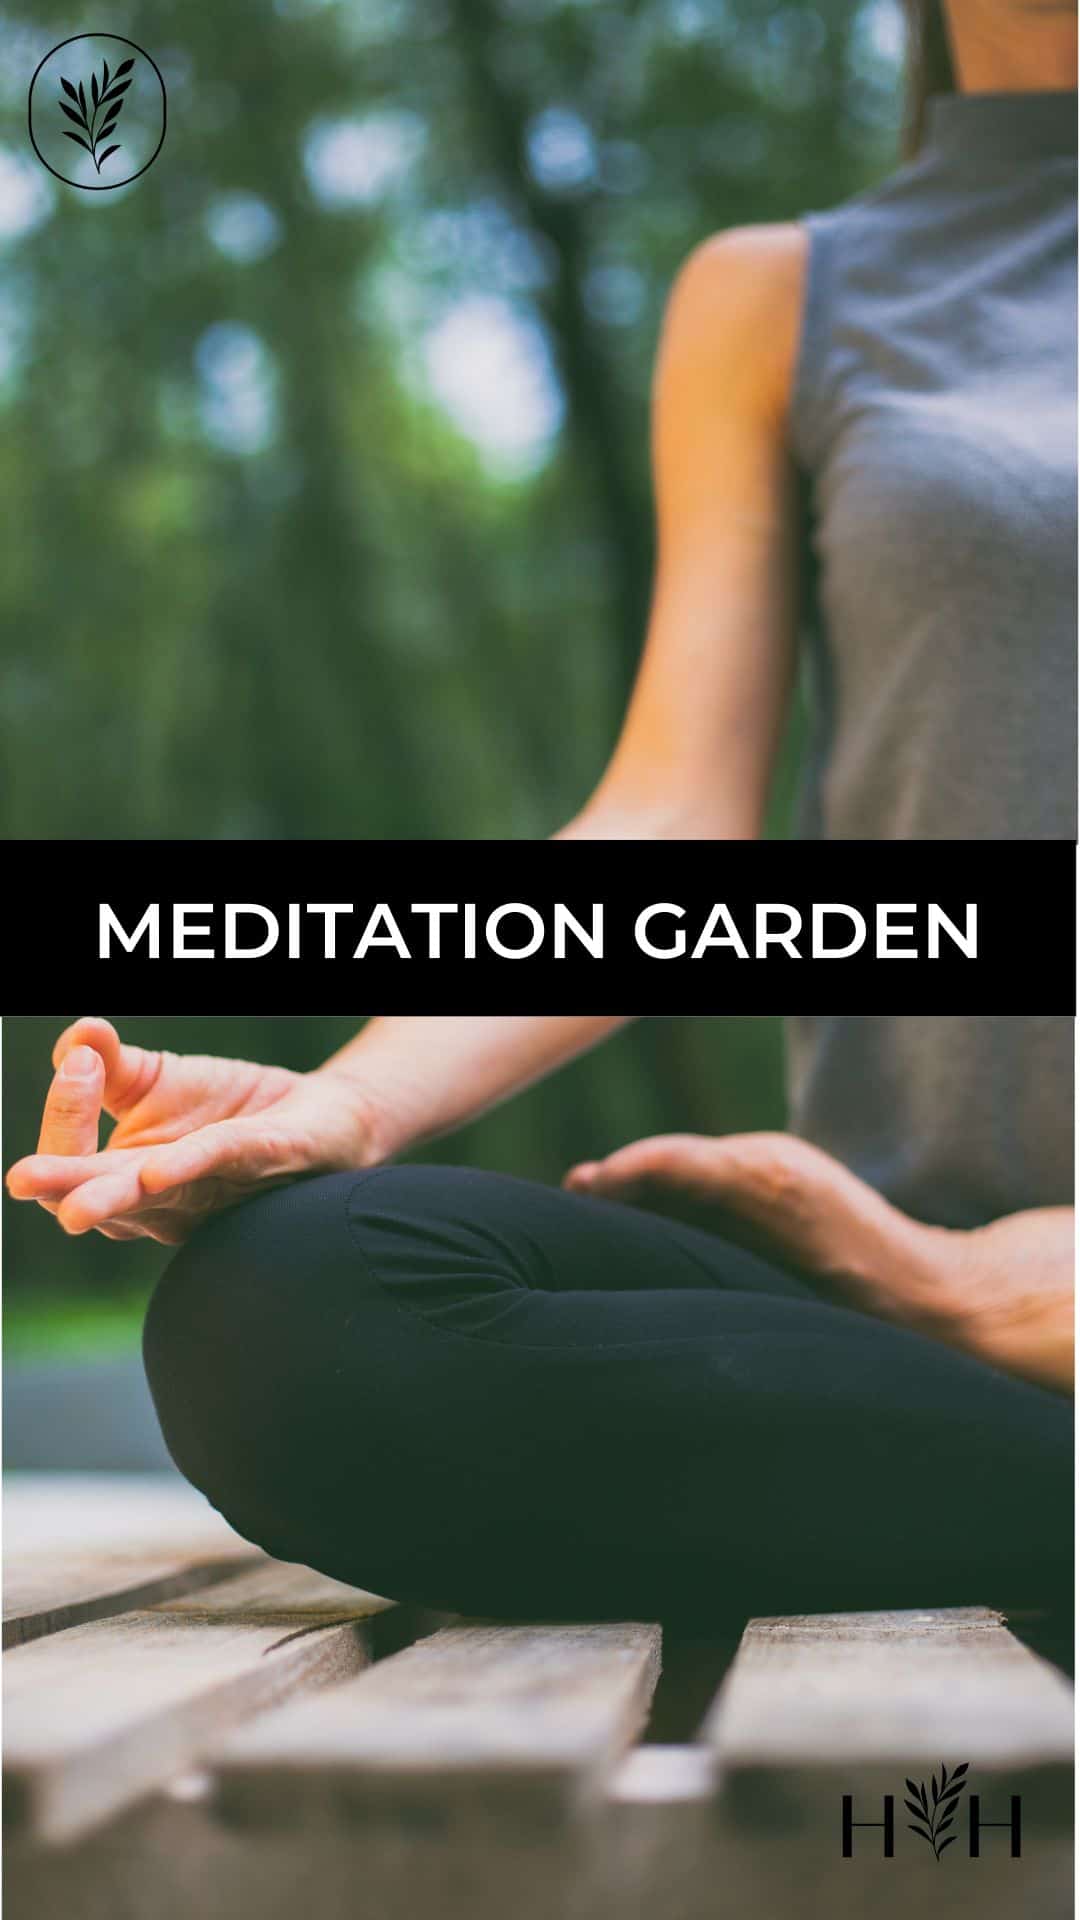 Meditation garden via @home4theharvest